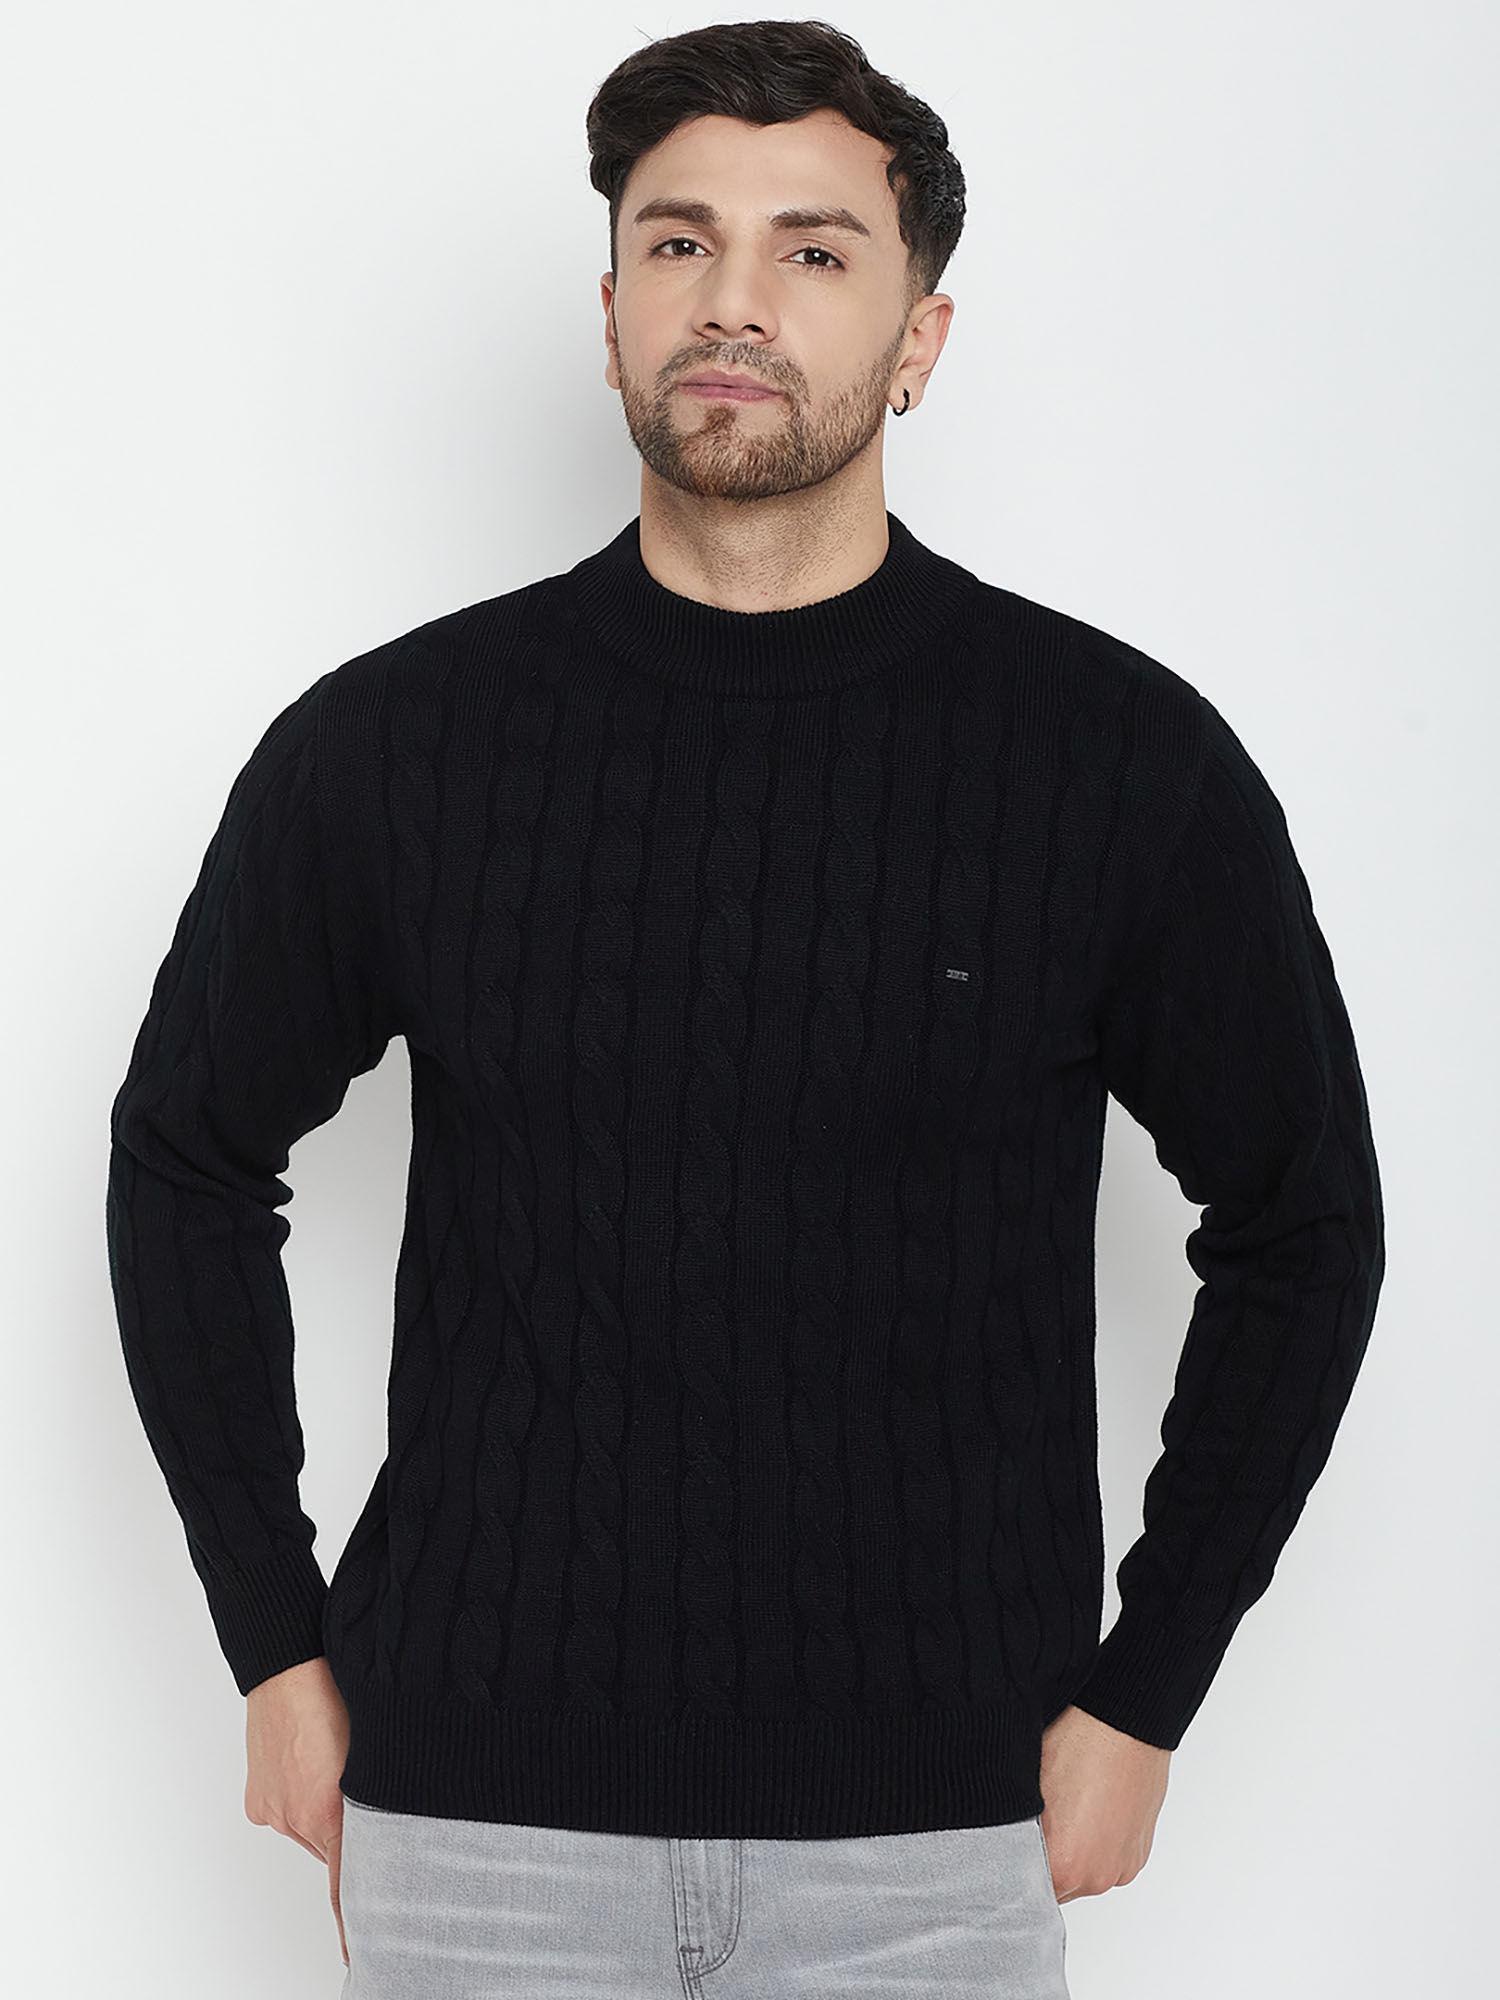 men-black-self-design-full-sleeves-round-neck-sweater